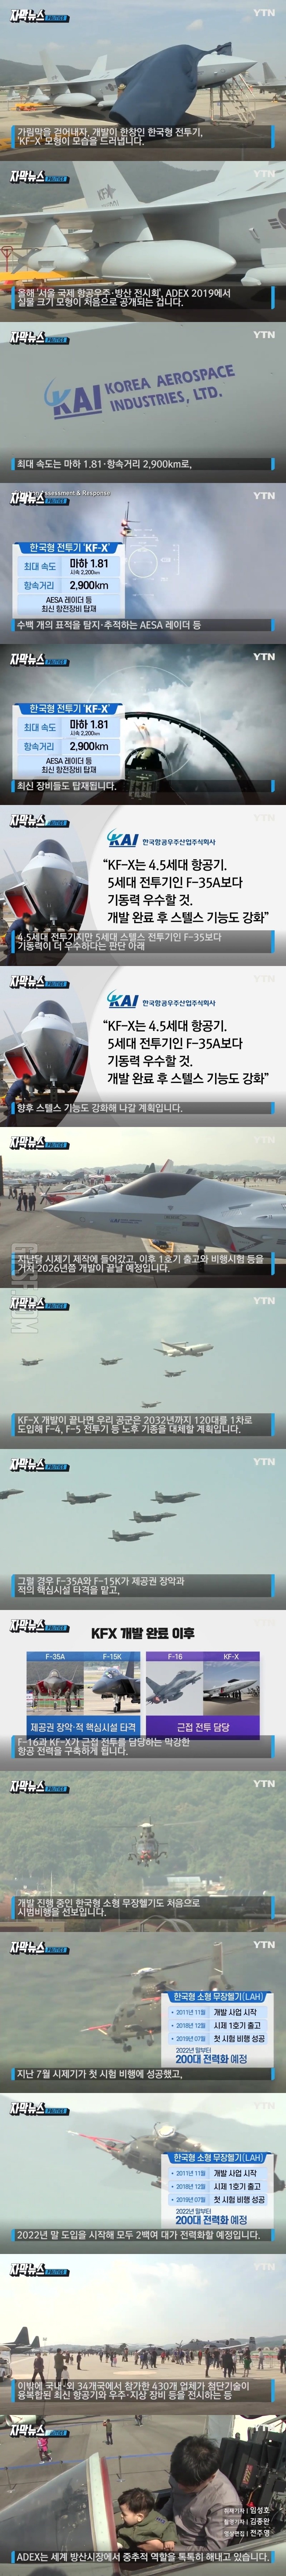 모습 드러낸 ',한국형 전투기',.jpg